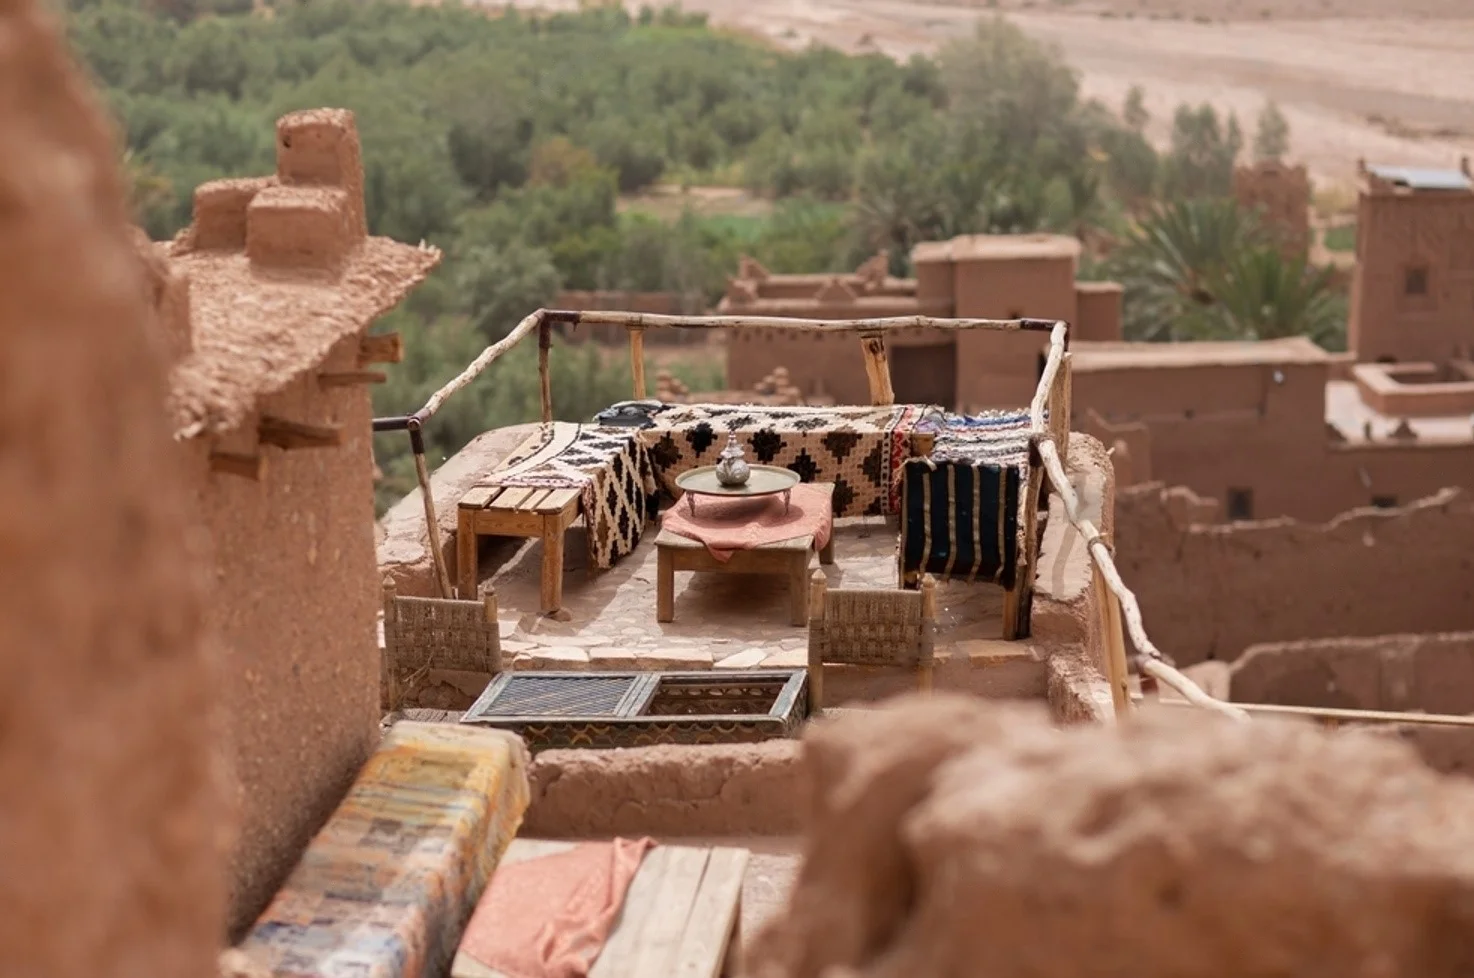 Day 6: Dades valley- Ouarzazate-Ait Ben Haddou - Marrakech